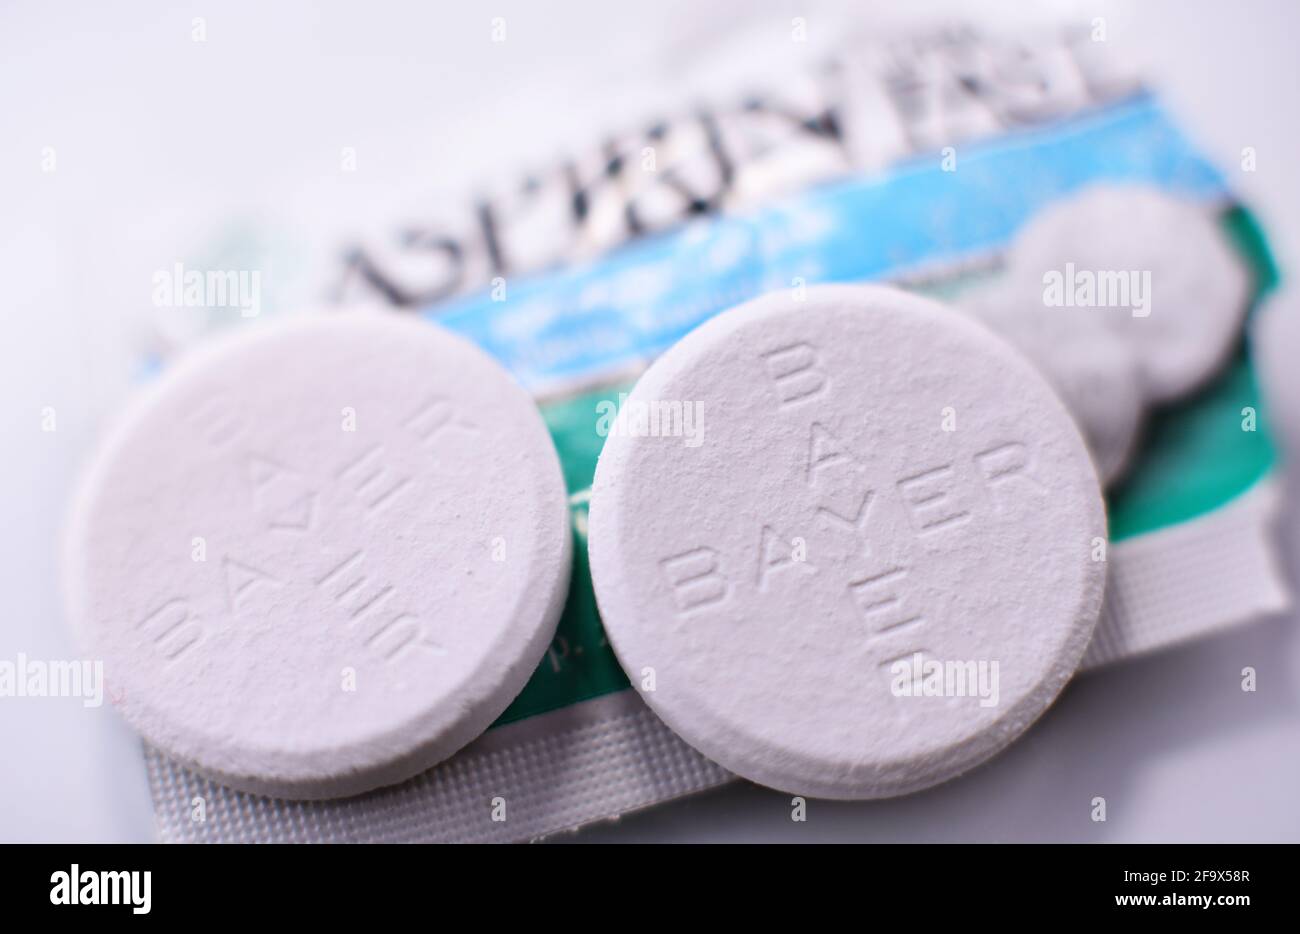 POZNAN, POL - 17 FEBBRAIO 2021: Pillole di aspirina, una marca di farmaci popolari, il primo e più noto prodotto di Bayer, multinazionale farmaceutica tedesca Foto Stock